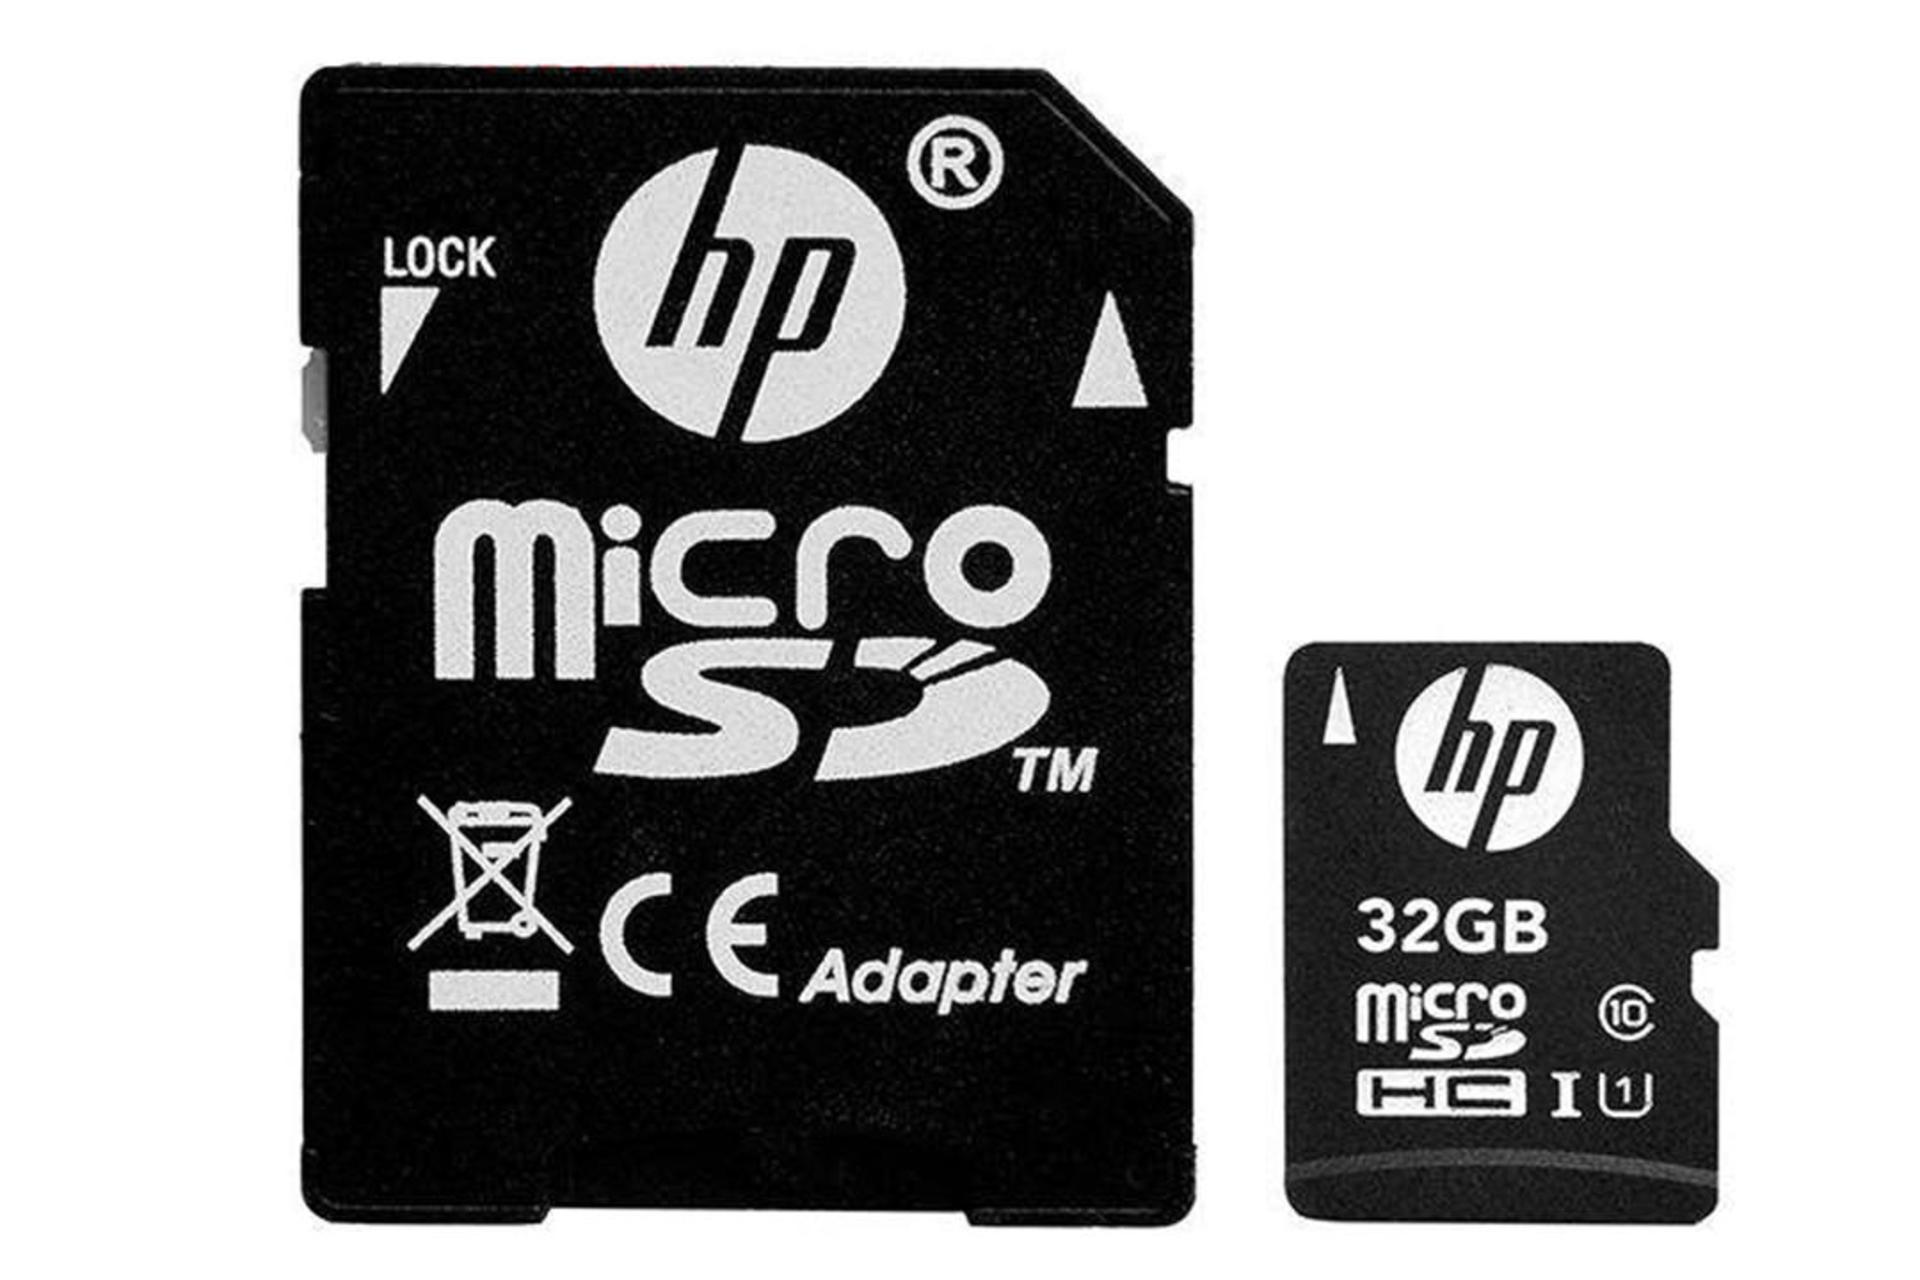 HP mi210 microSDHC Class 10 UHS-I U1 32GB